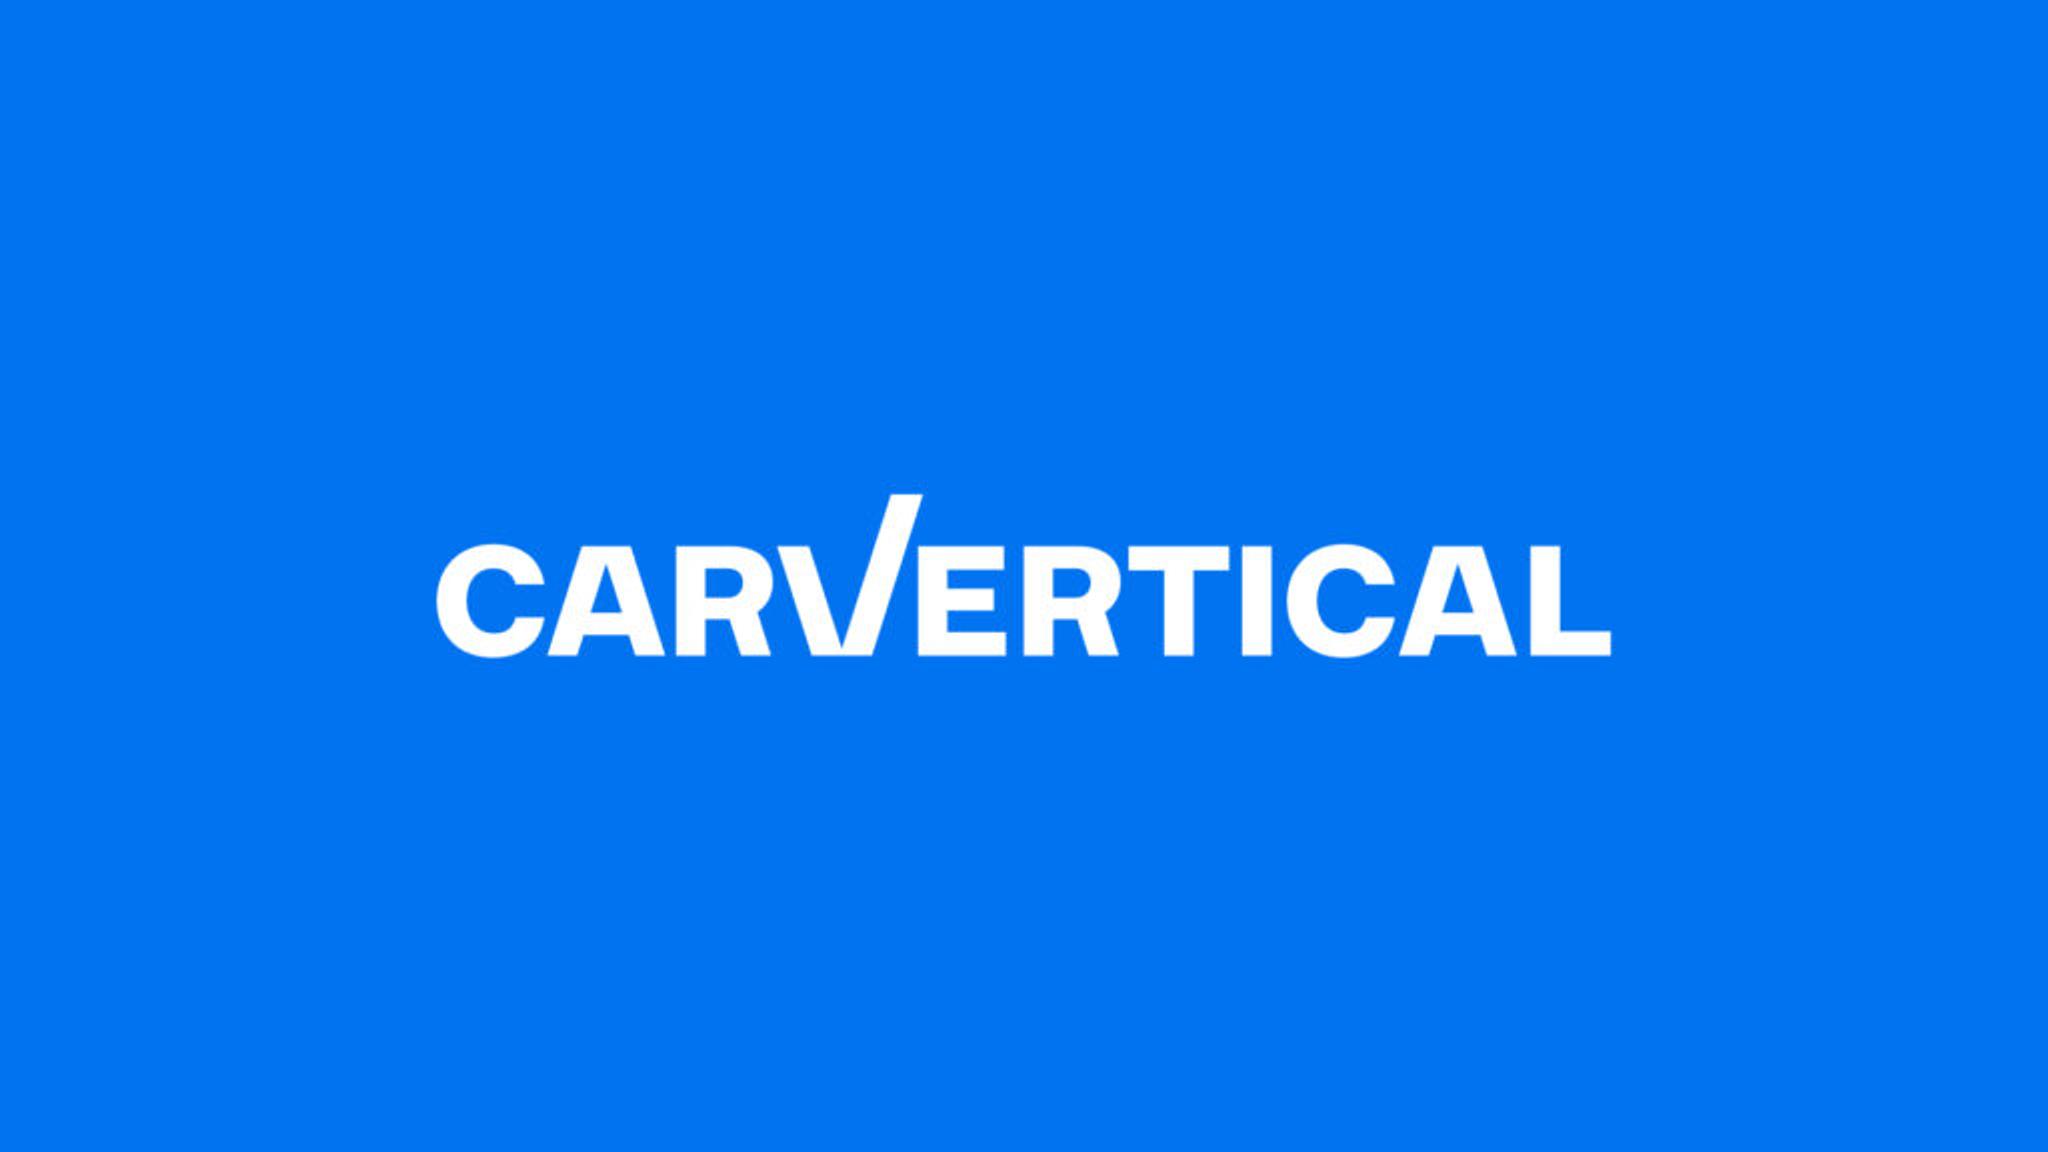 carvertical logo blue white